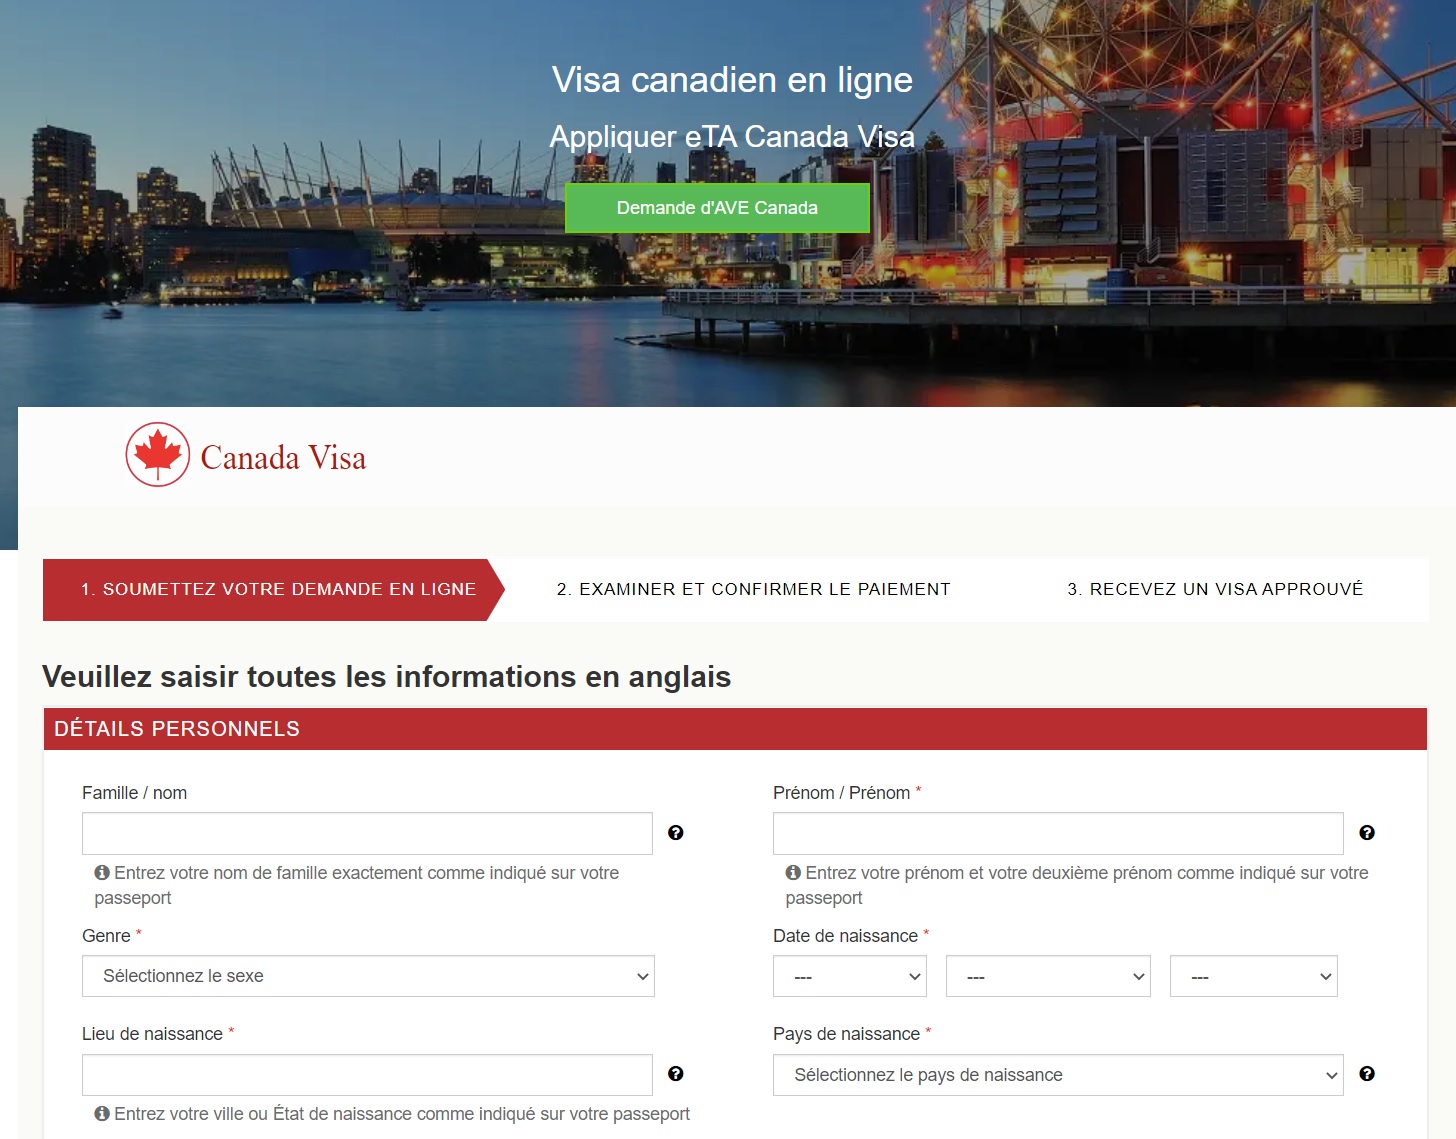 Online-Sprachunterstützung für Kanada-Visa